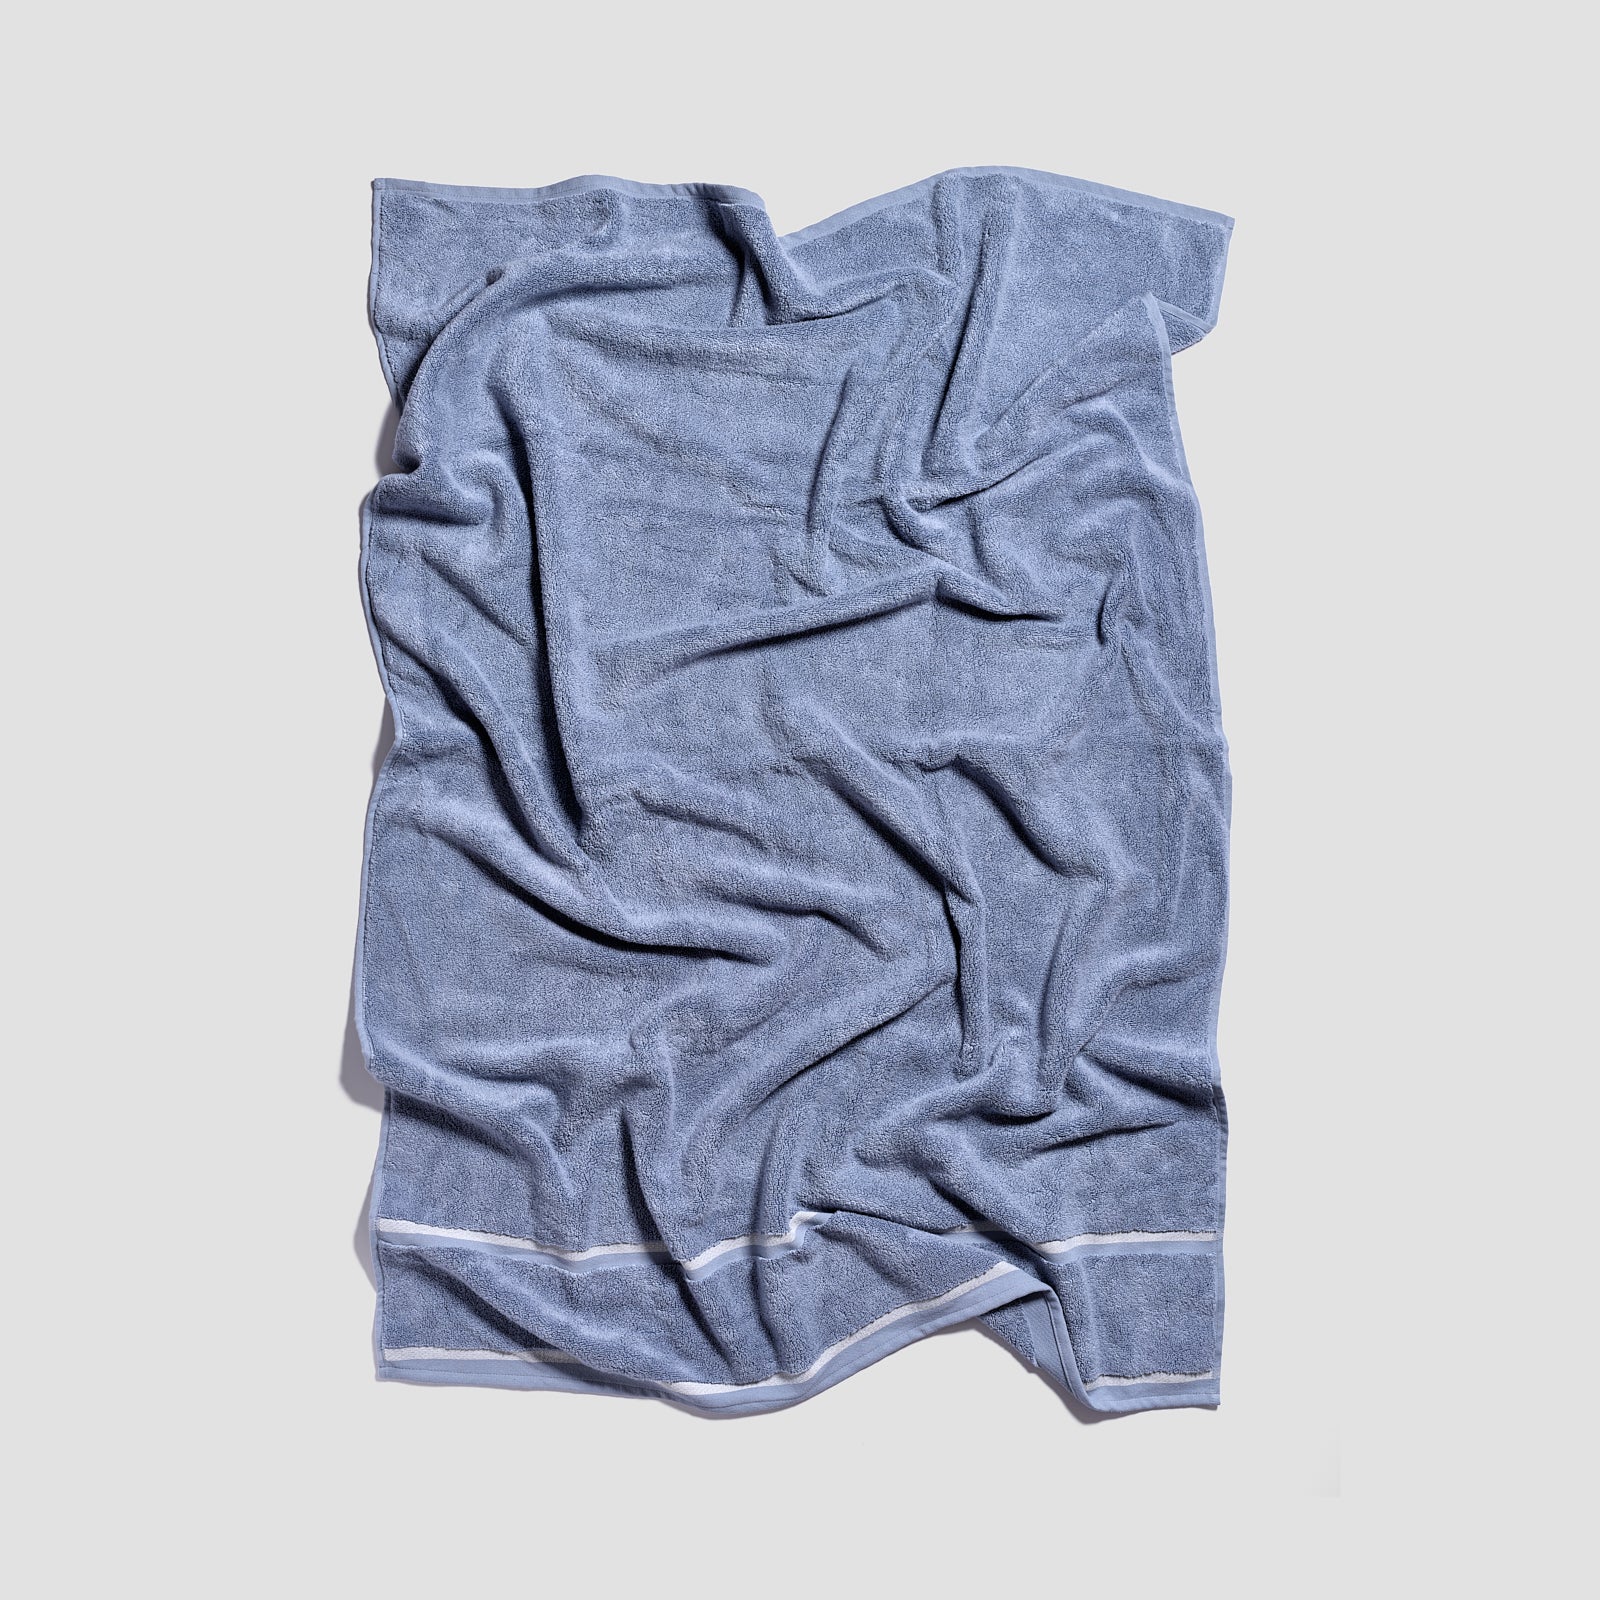 Warm Blue Bath Sheet